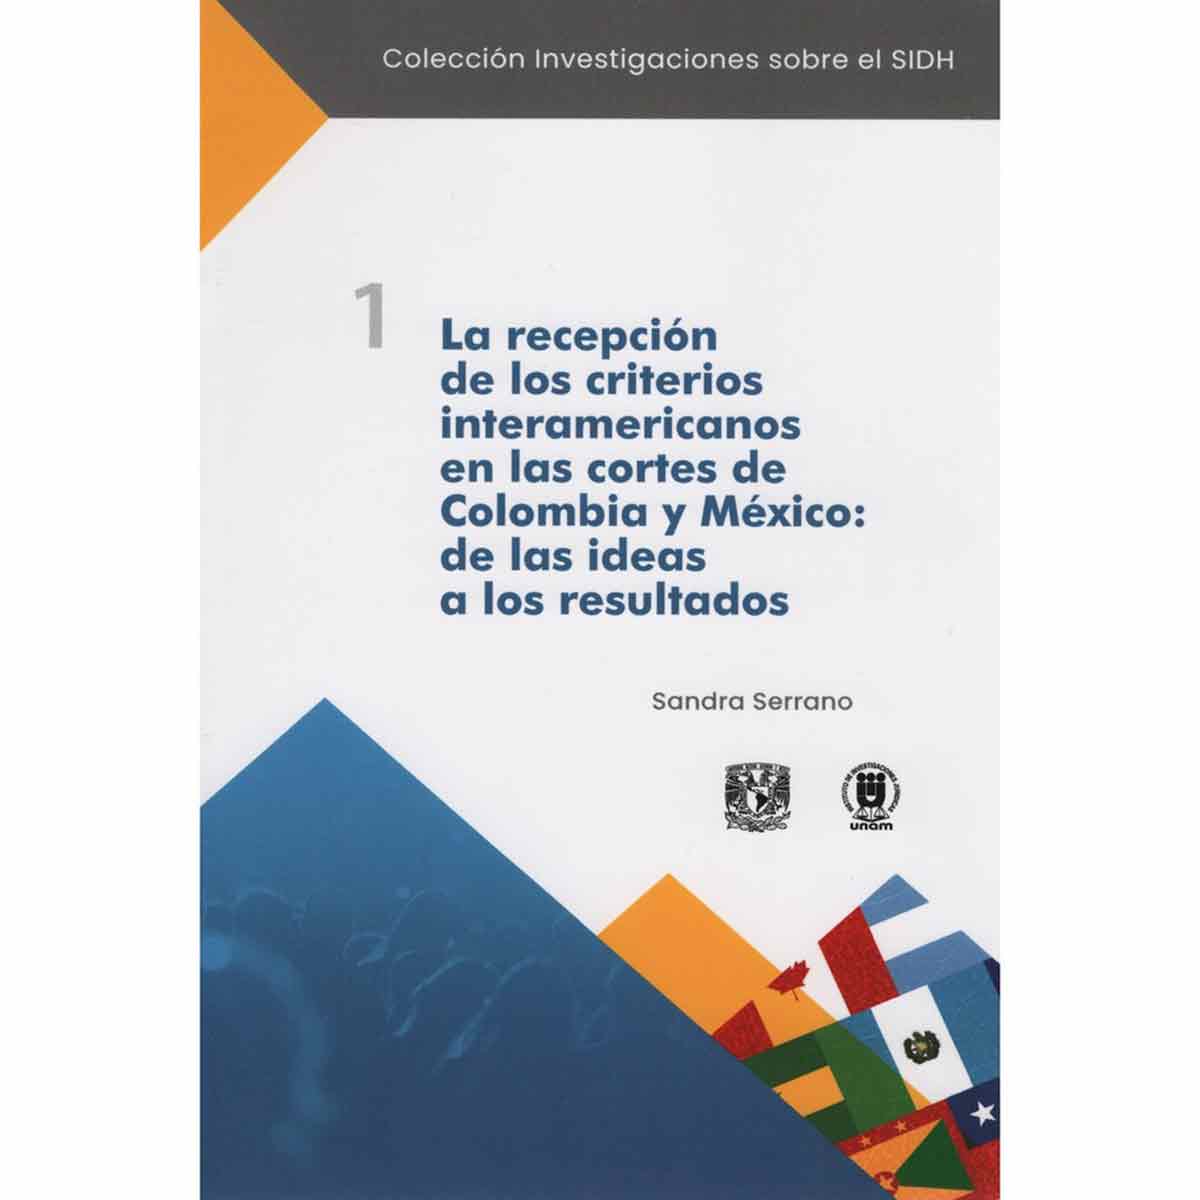 LA RECEPCIÓN DE LOS CRITERIOS INTERAMERICANOS EN LAS CORTES DE COLOMBIA Y MÉXICO: DE LAS IDEAS A LOS RESULTADOS